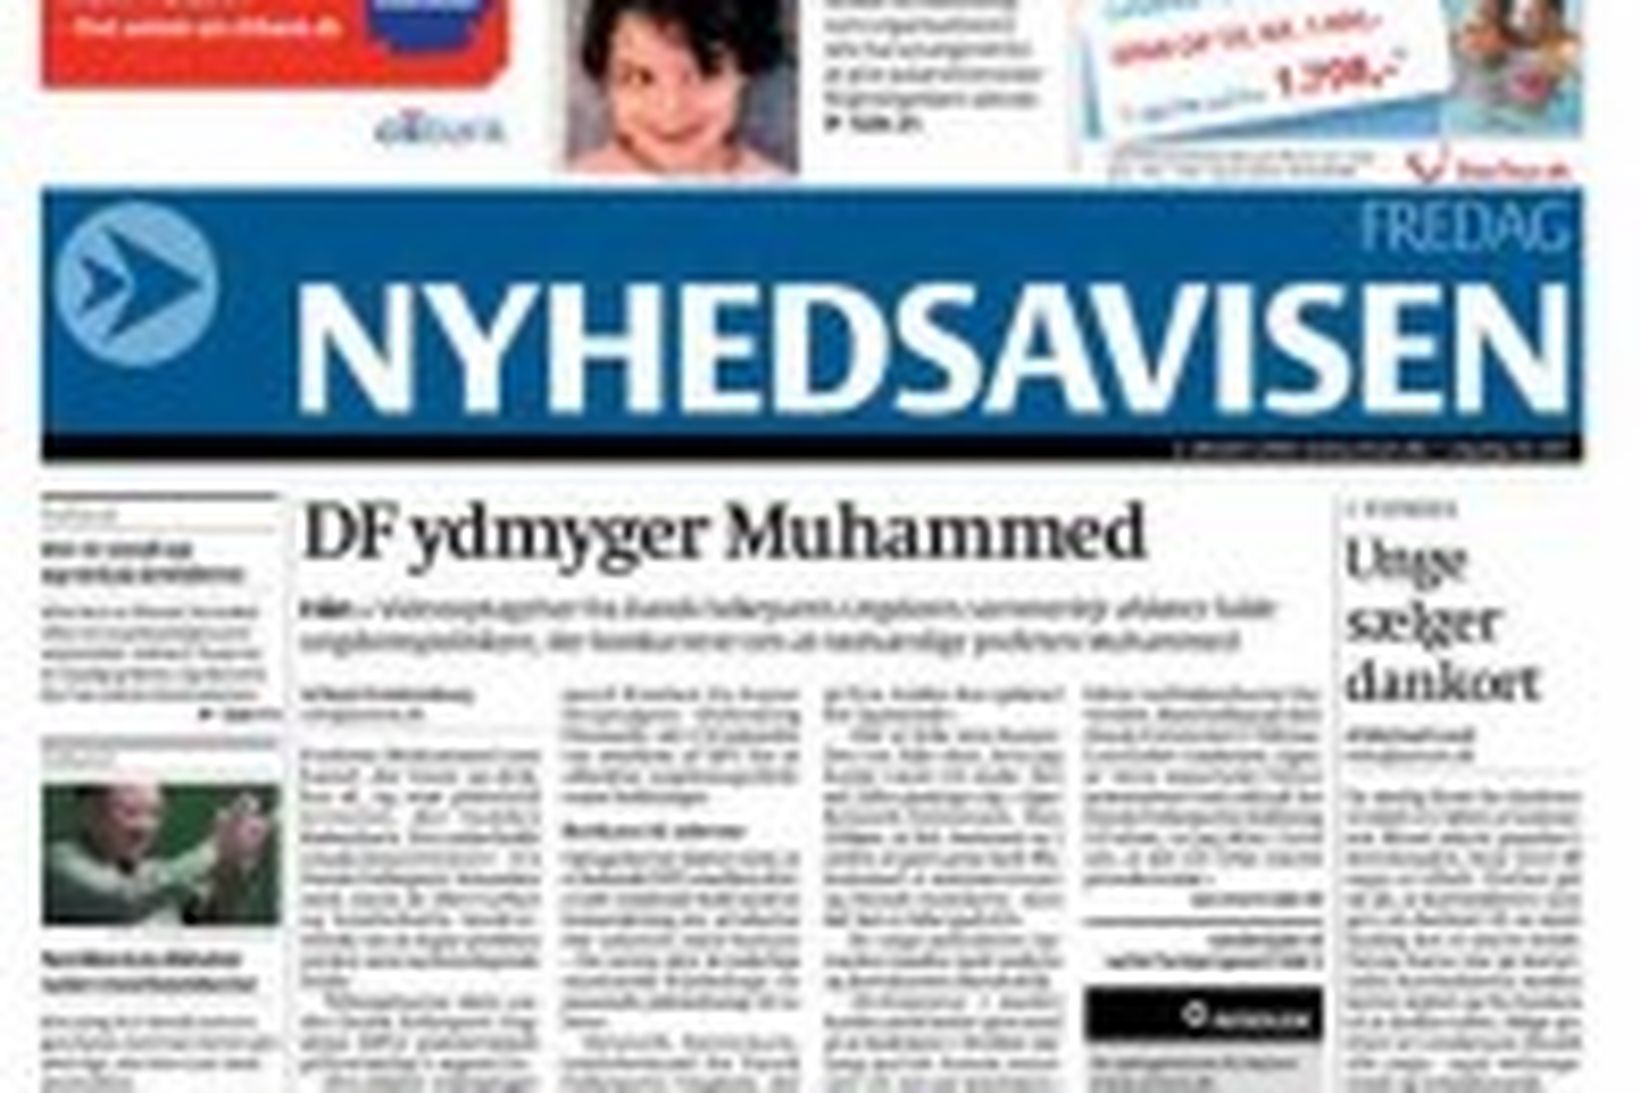 Fyrsta forsíða Nyhedsavisen.